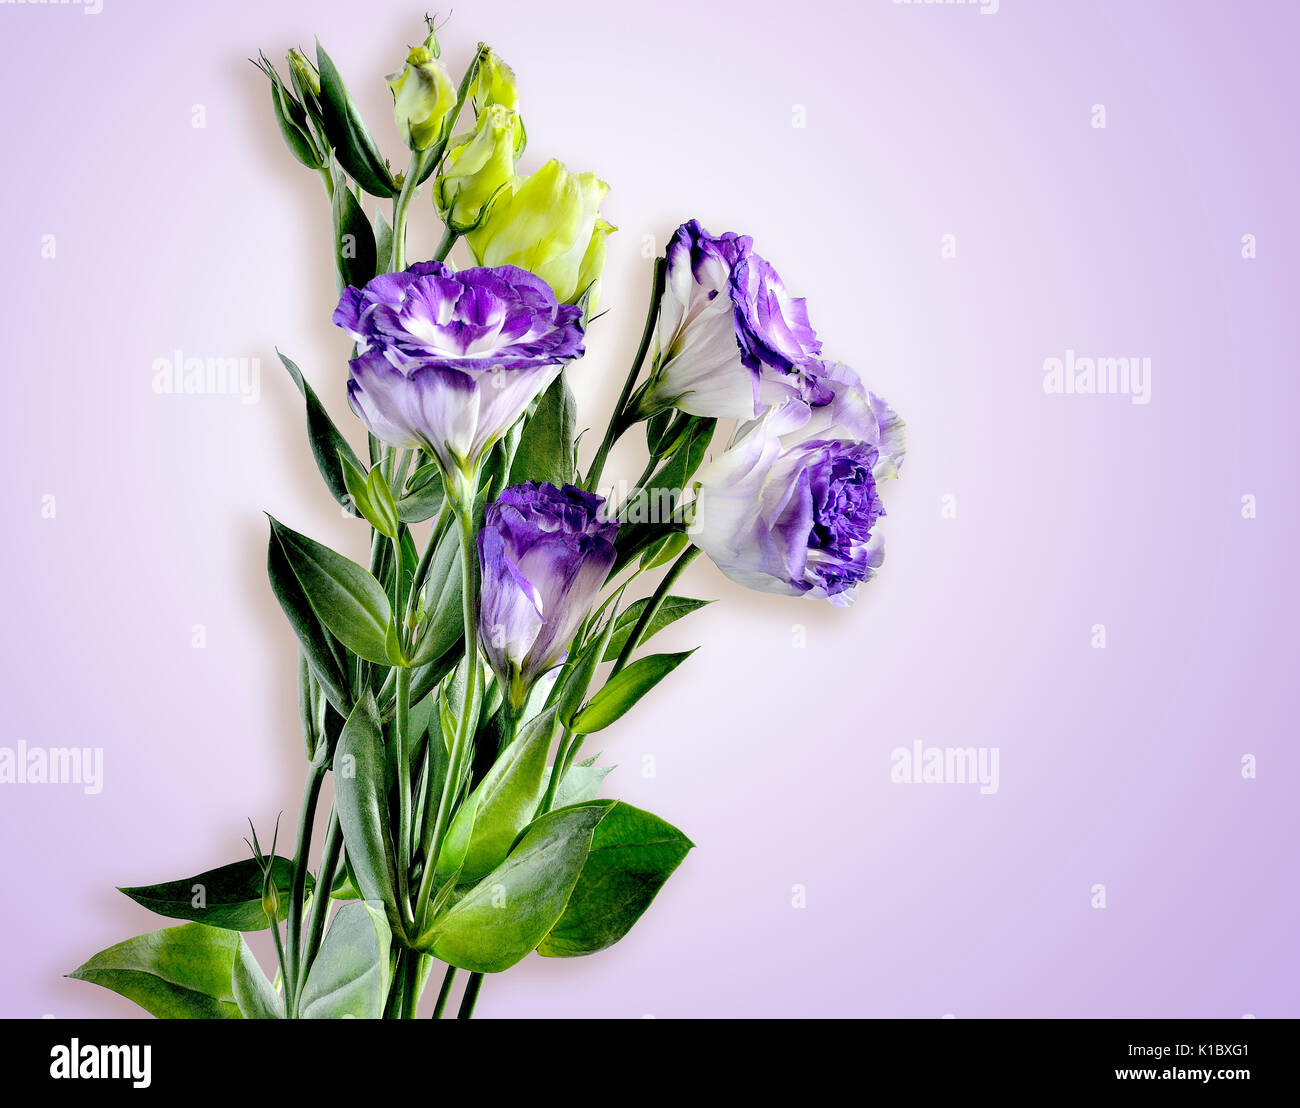 Blumenstrauß aus lila mit weißen EUSTOMA (LISIANTHUS) Blumen auf einem zarten lila Hintergrund Stockfoto